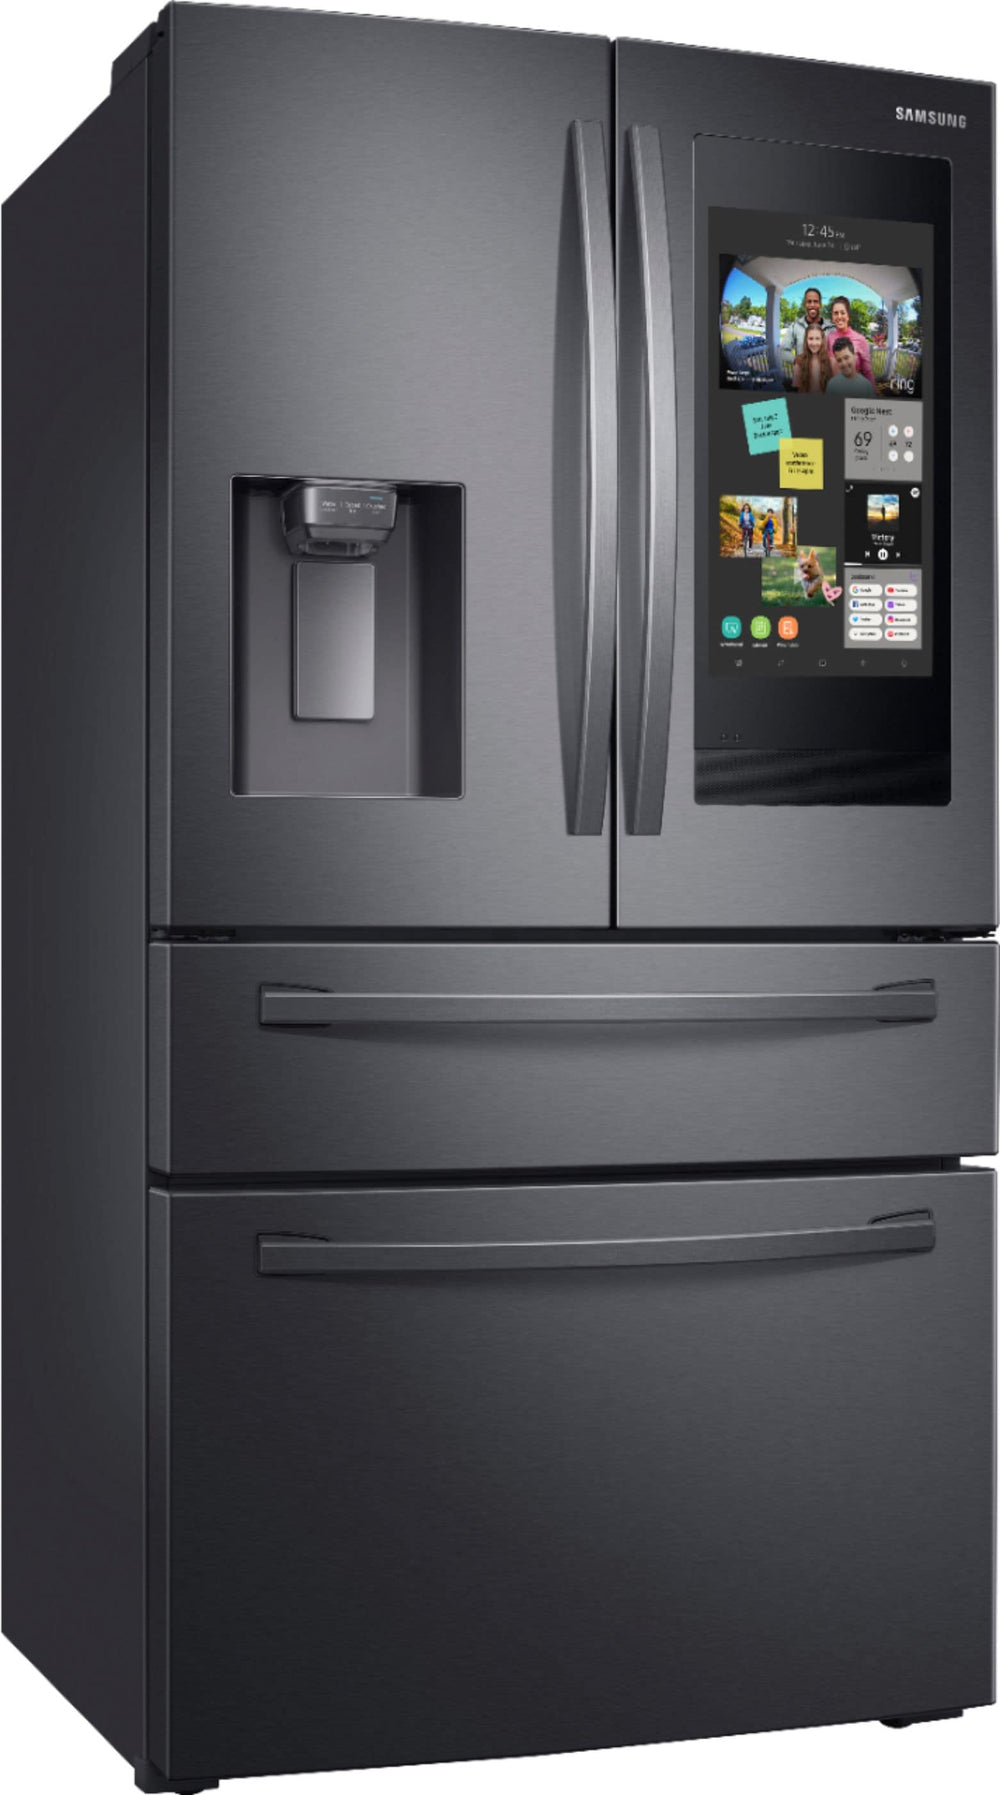 Samsung - Family Hub 27.7 Cu. Ft. 4-Door French Door  Fingerprint Resistant Refrigerator - Black stainless steel_1